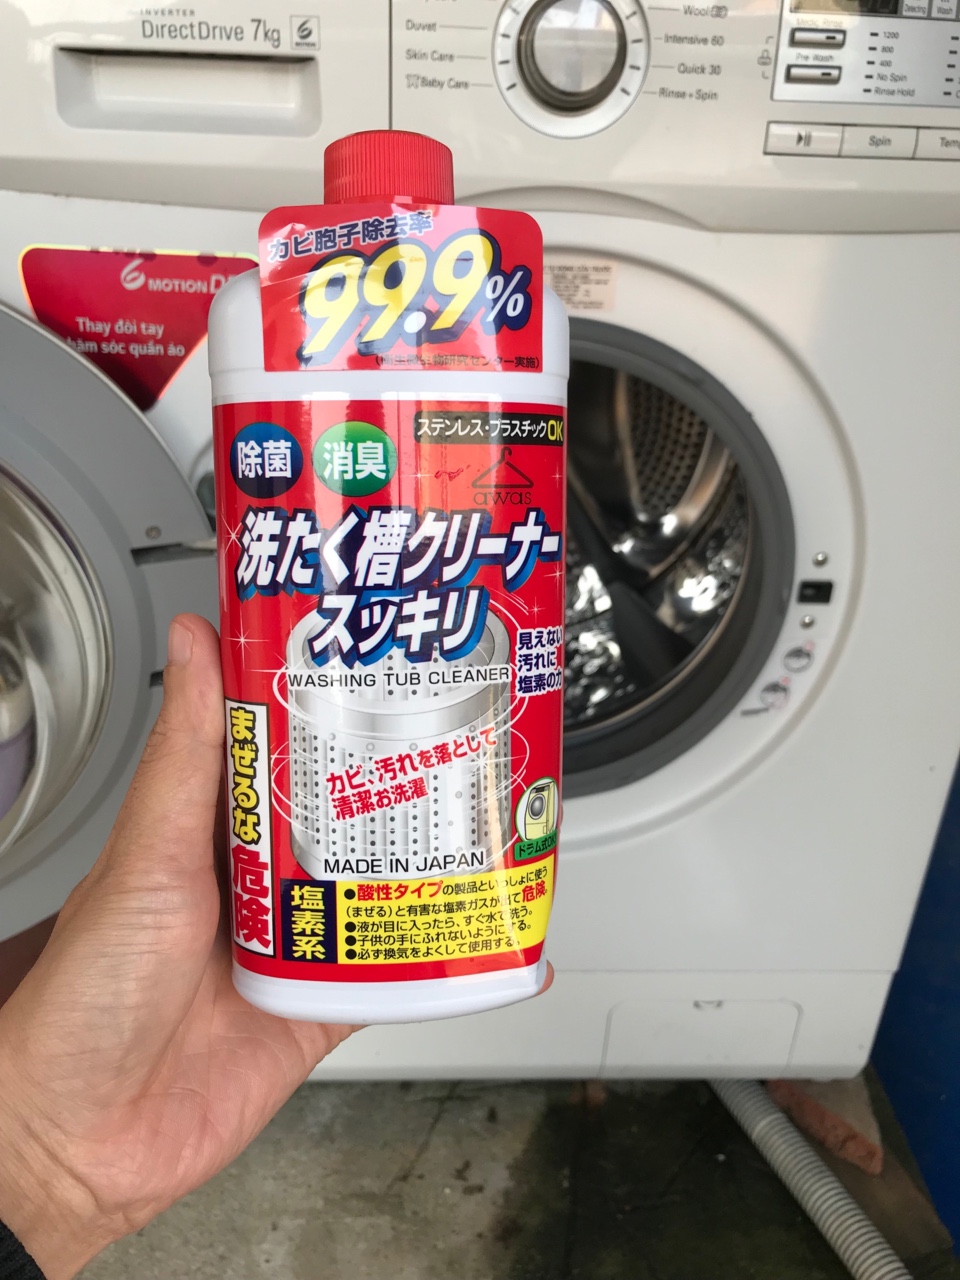 Hướng Dẫn Cách Sử Dụng Bột Tẩy Lồng Máy Giặt Nhật Bản, Hàn Quốc